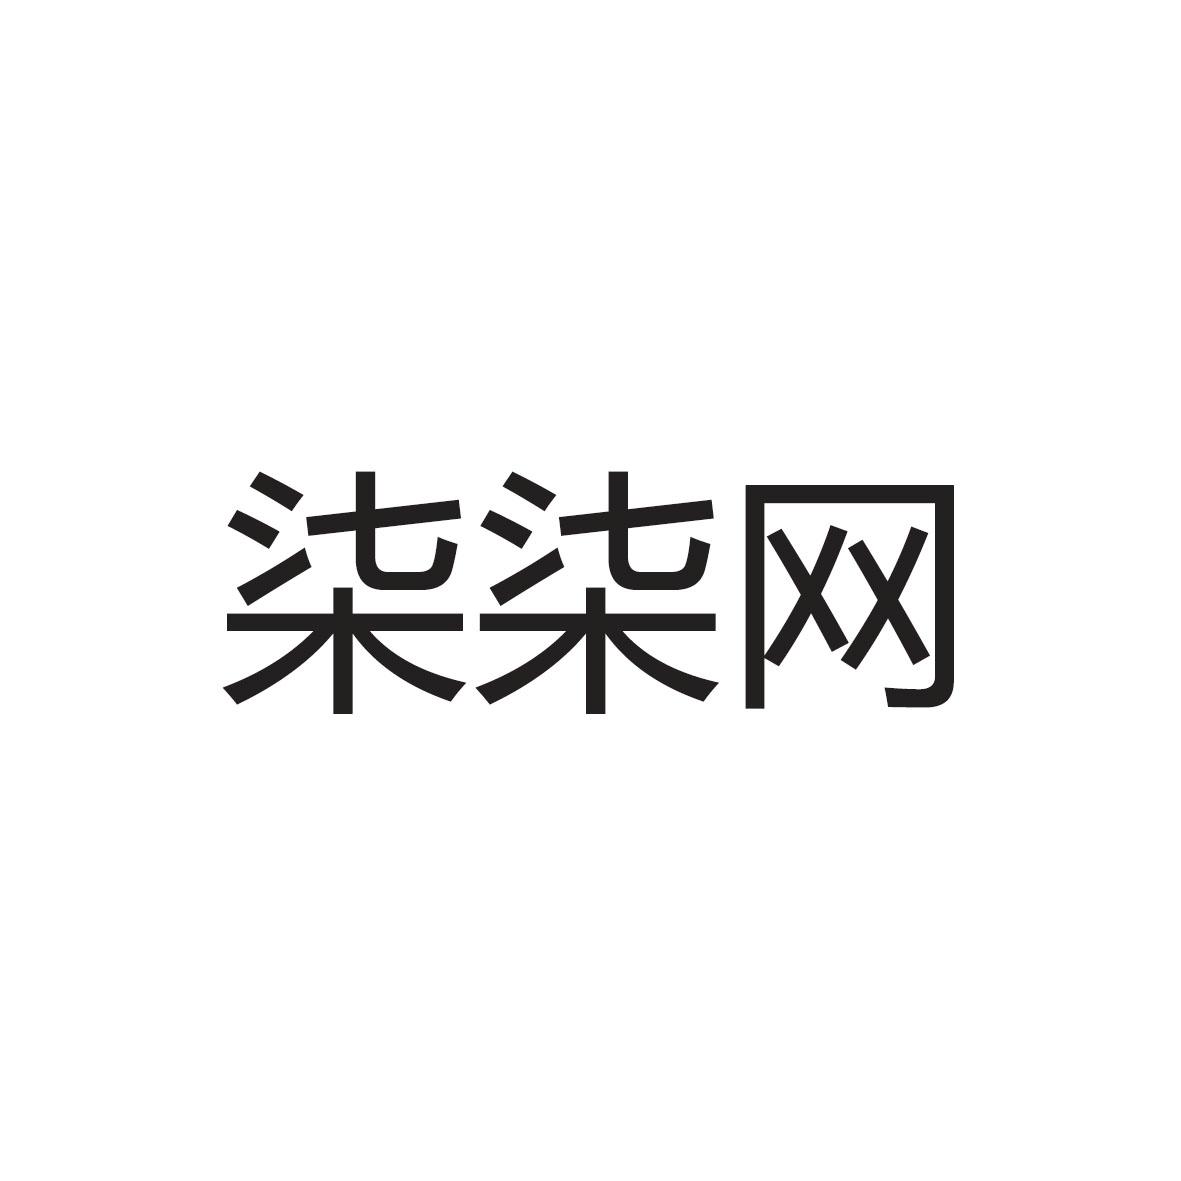 商标文字柒柒网商标注册号 19238623,商标申请人由客(上海)网络科技